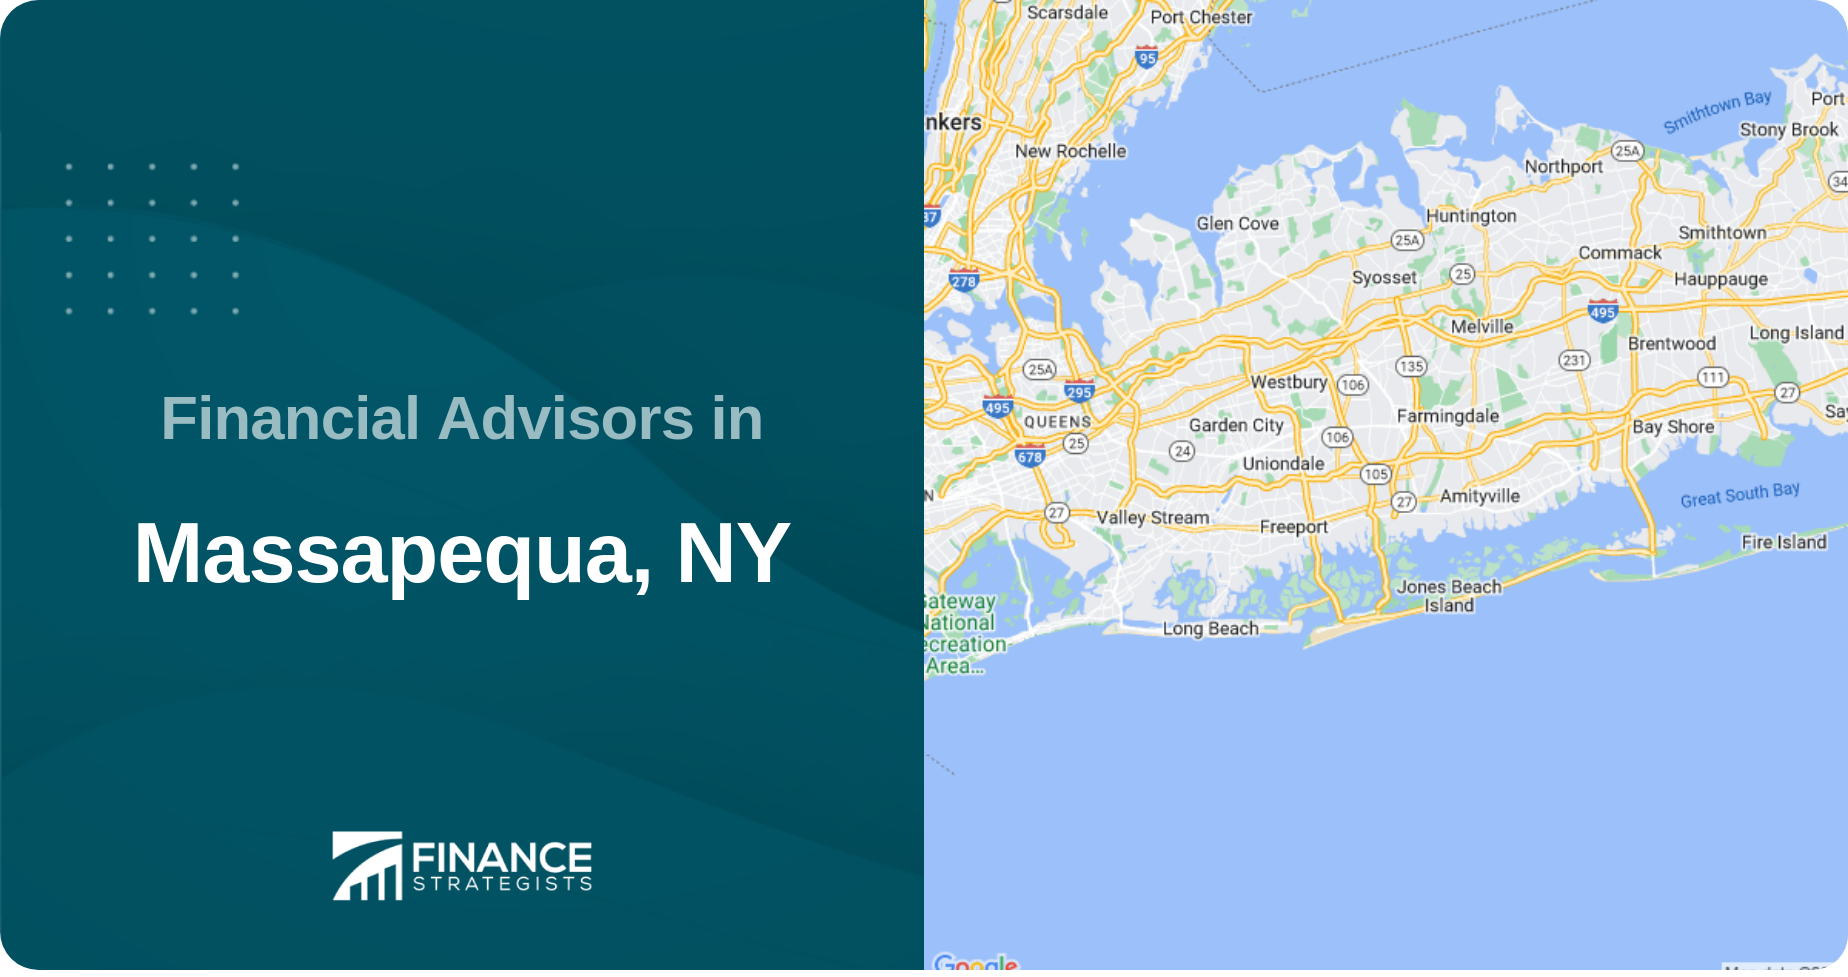 Financial Advisors in Massapequa, NY